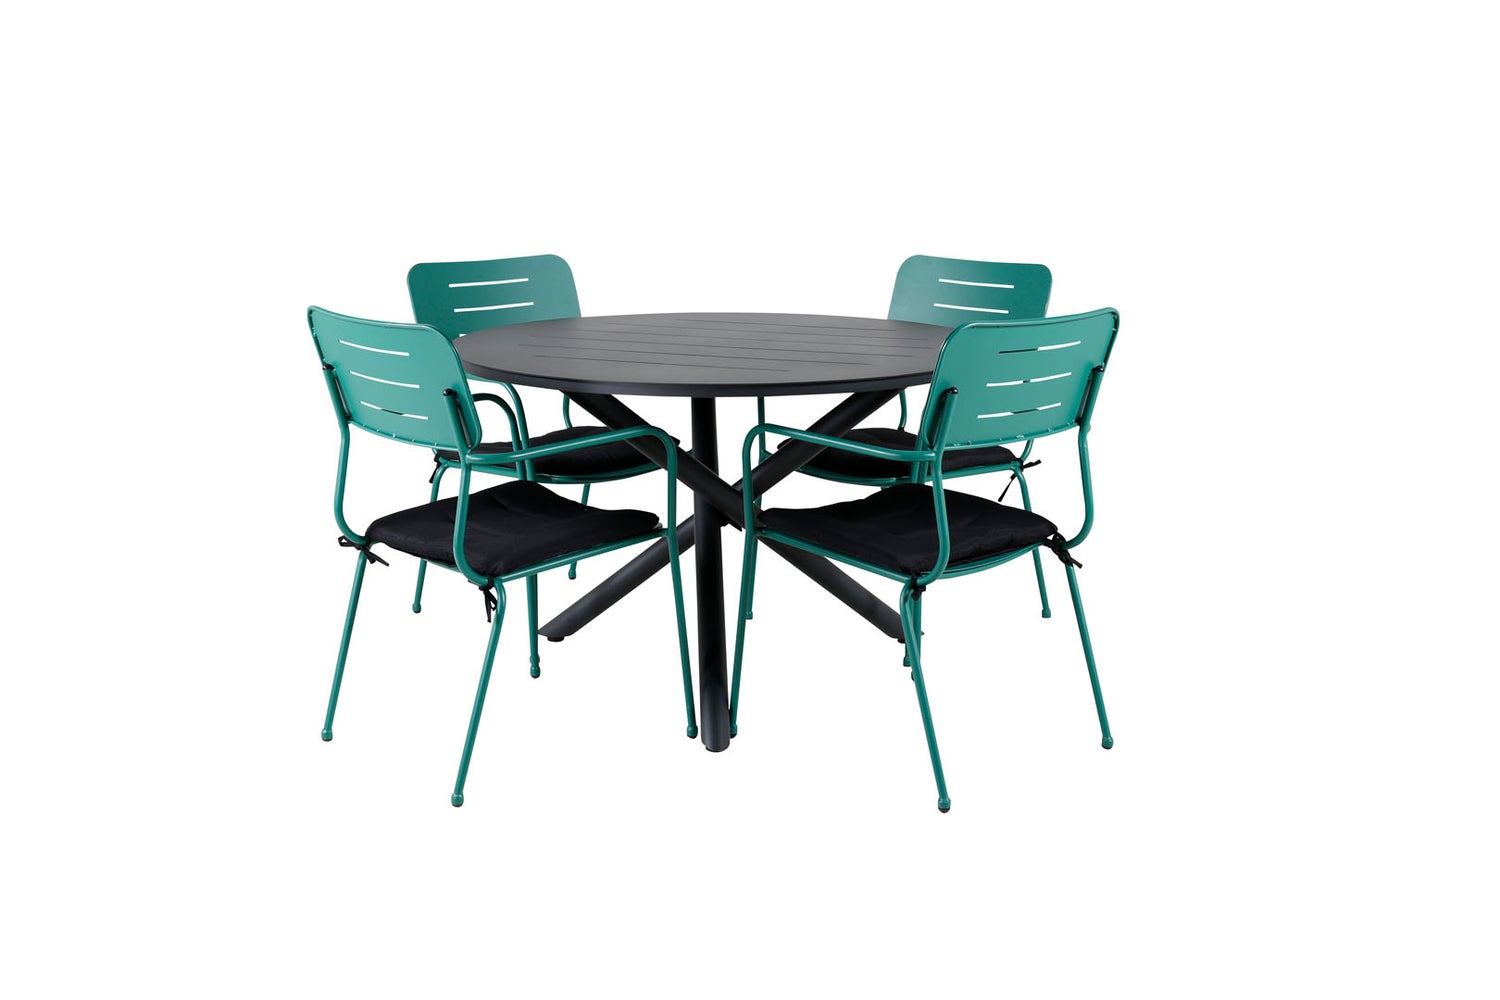 Alma Gartenset Tisch Ø120cm und 4 Stühle Nicke grün, schwarz.